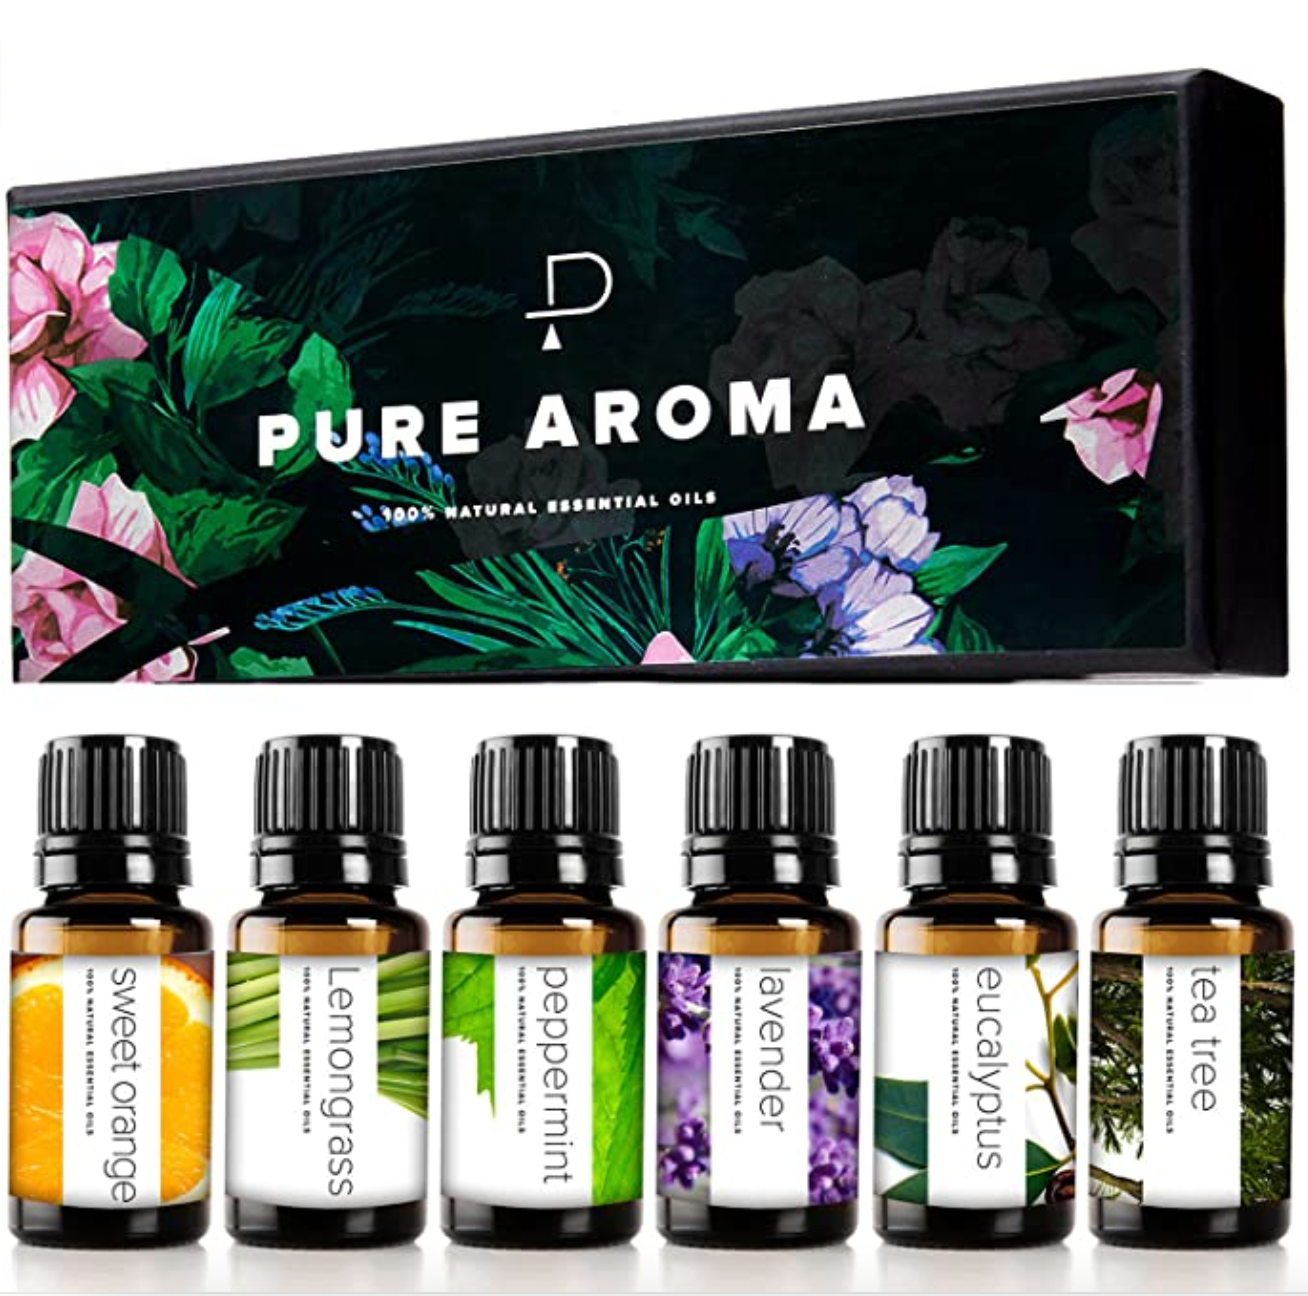 Pure Aroma 100% Pure Therapeutic Grade Oils Kit